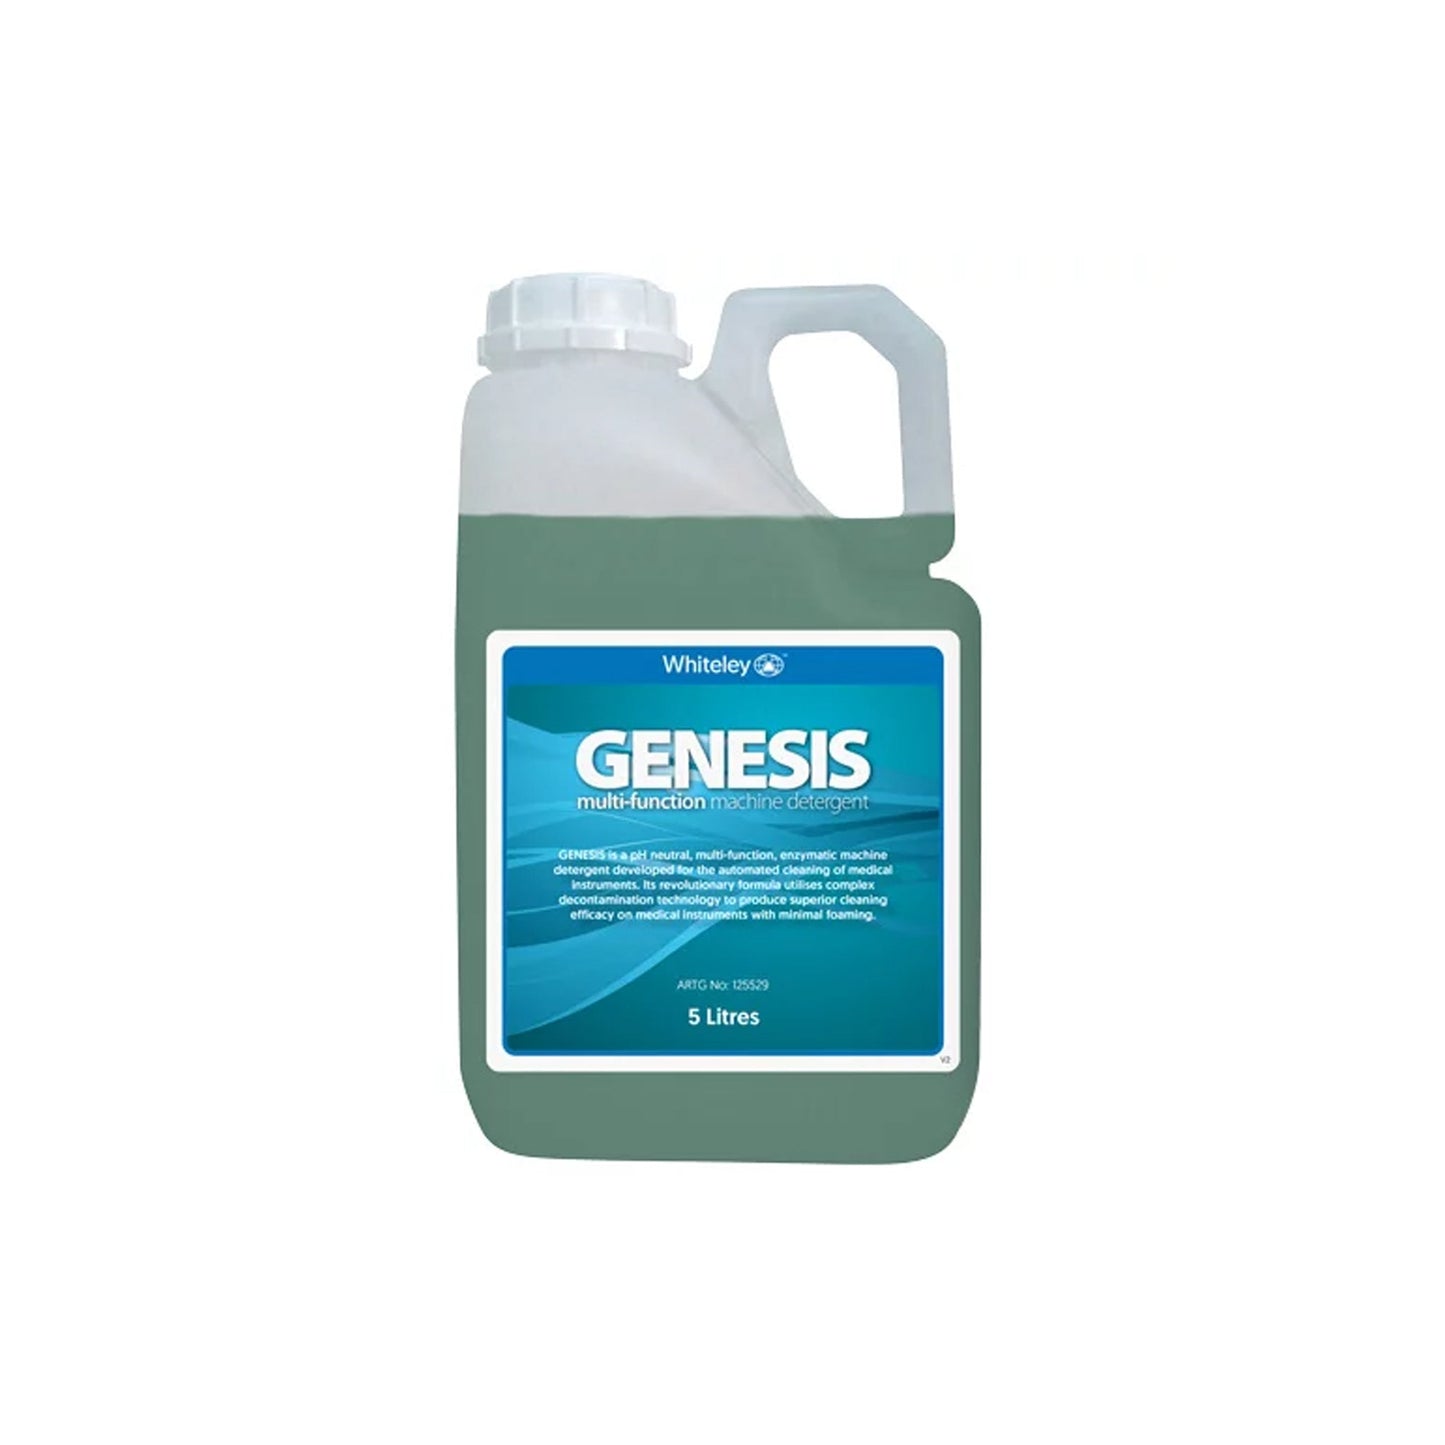 Genesis Machine Detergent